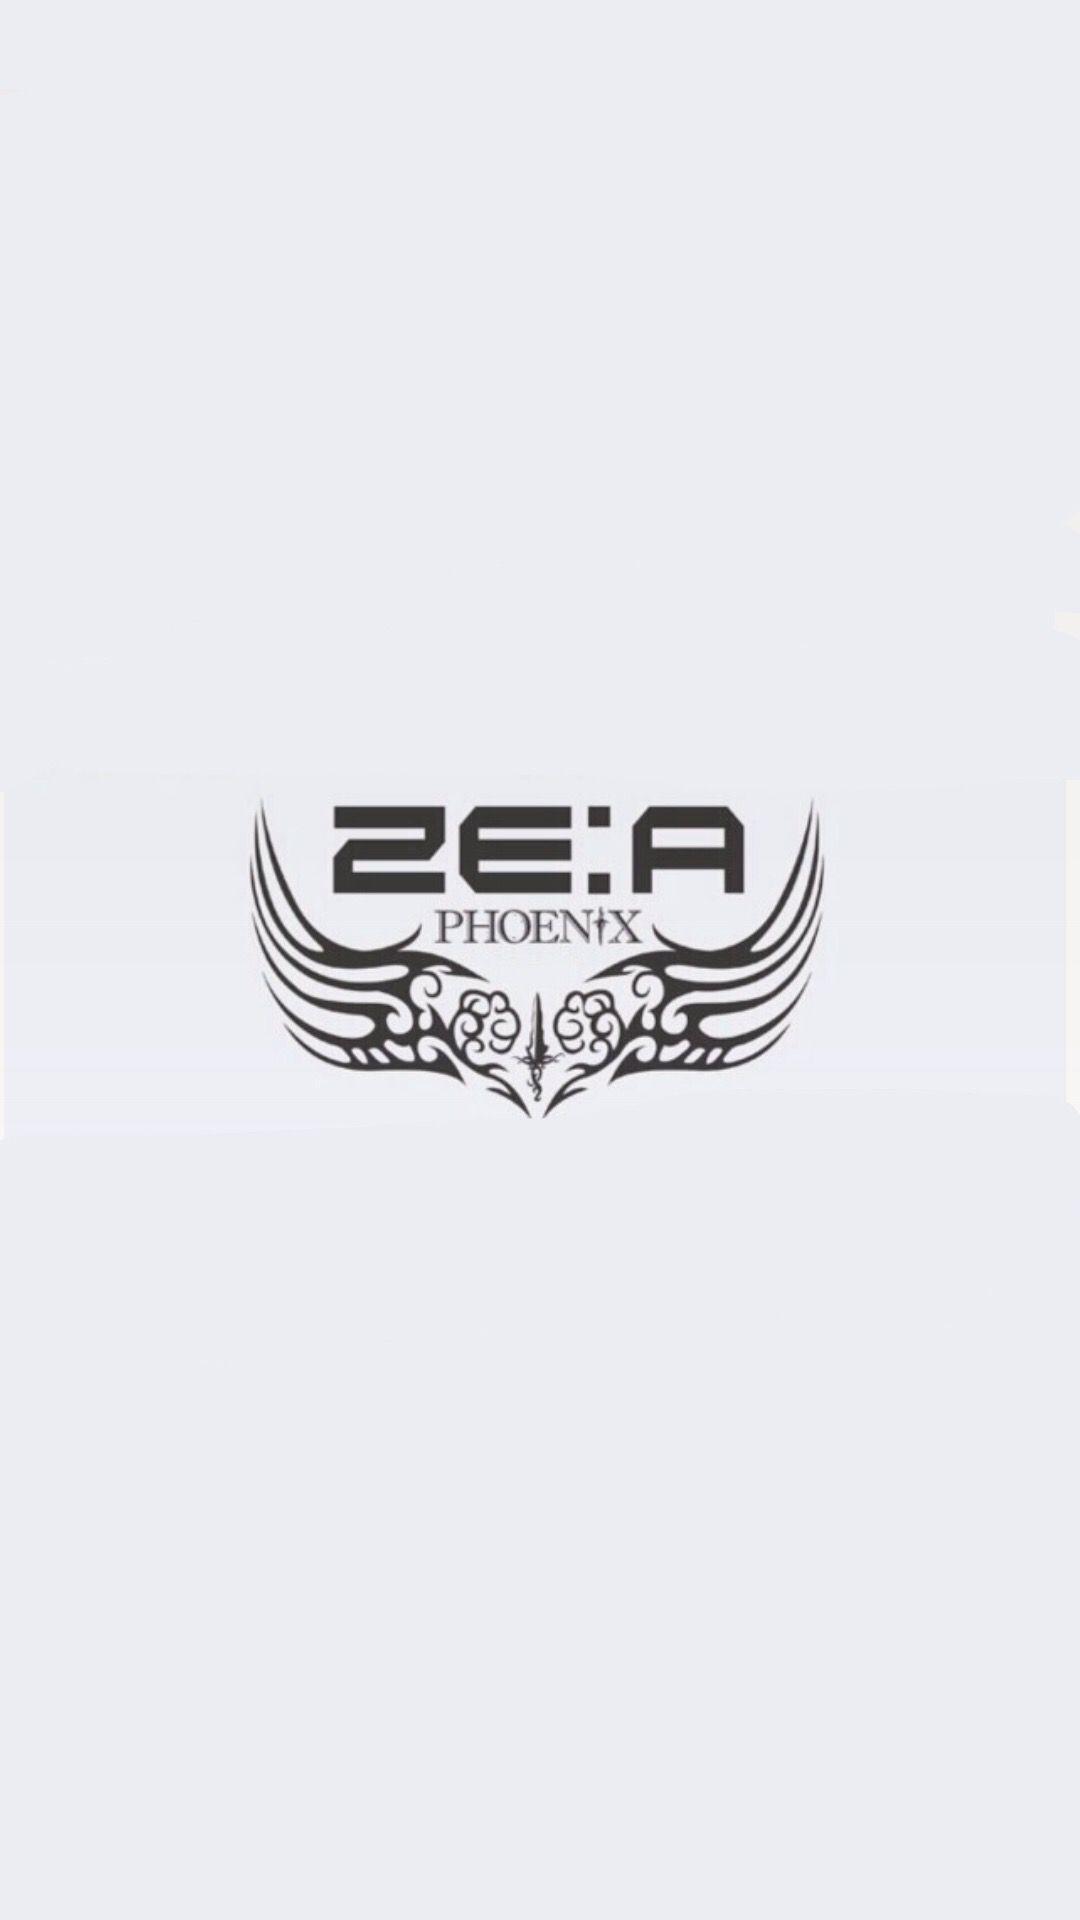 Zea Logo - 13 Best Zea logo wallpapers images in 2018 | Un logo, Fondos, Legos